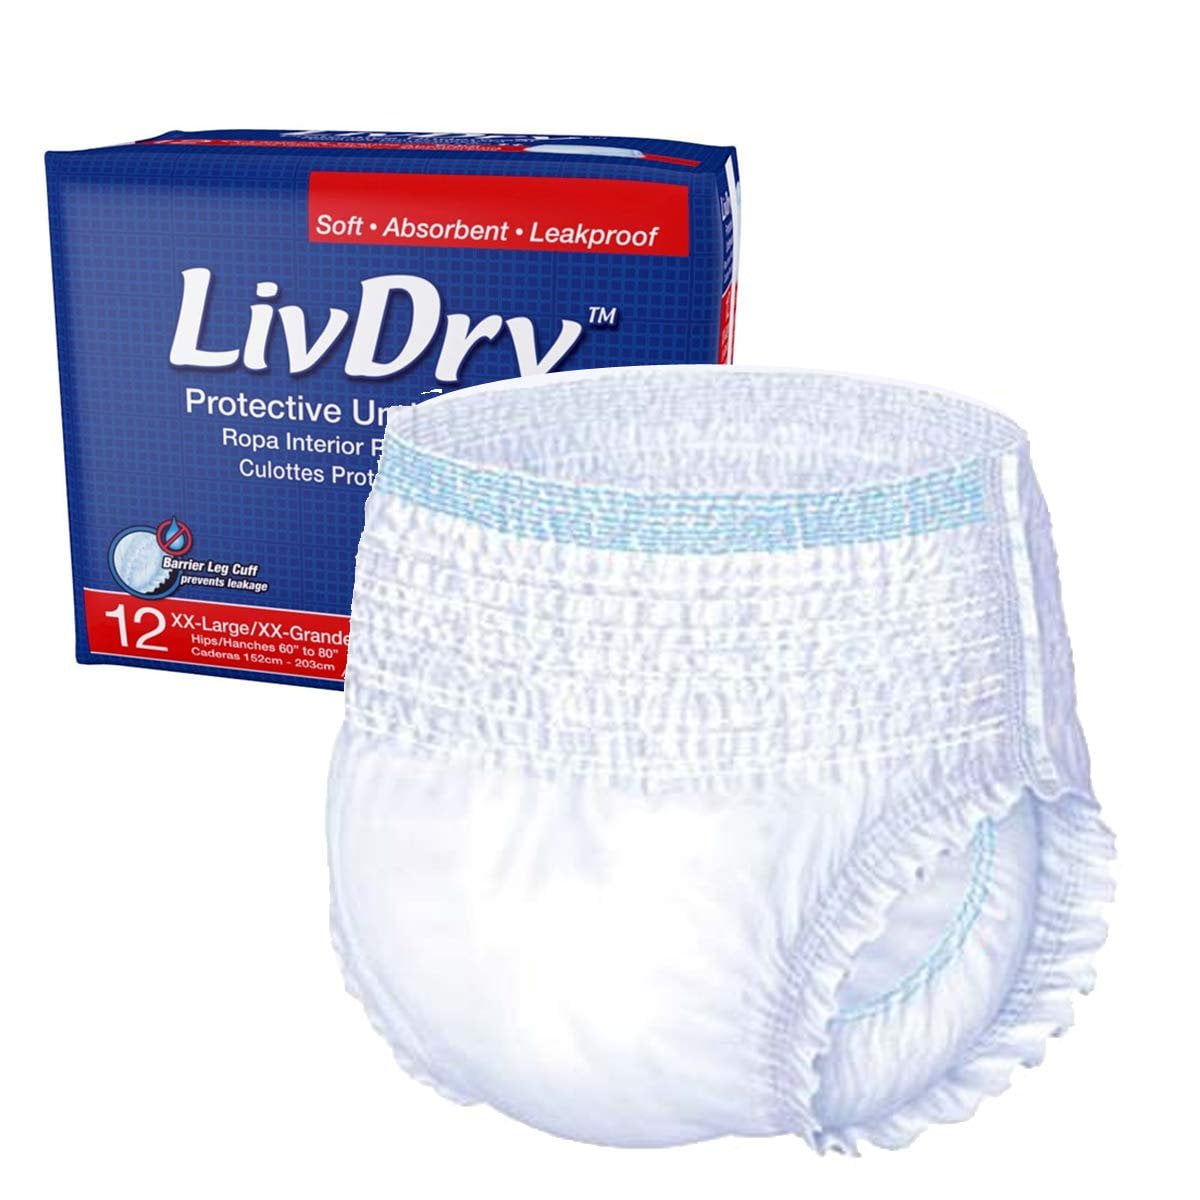 Contradicción Festival James Dyson liv dry diapers Abolido blanco